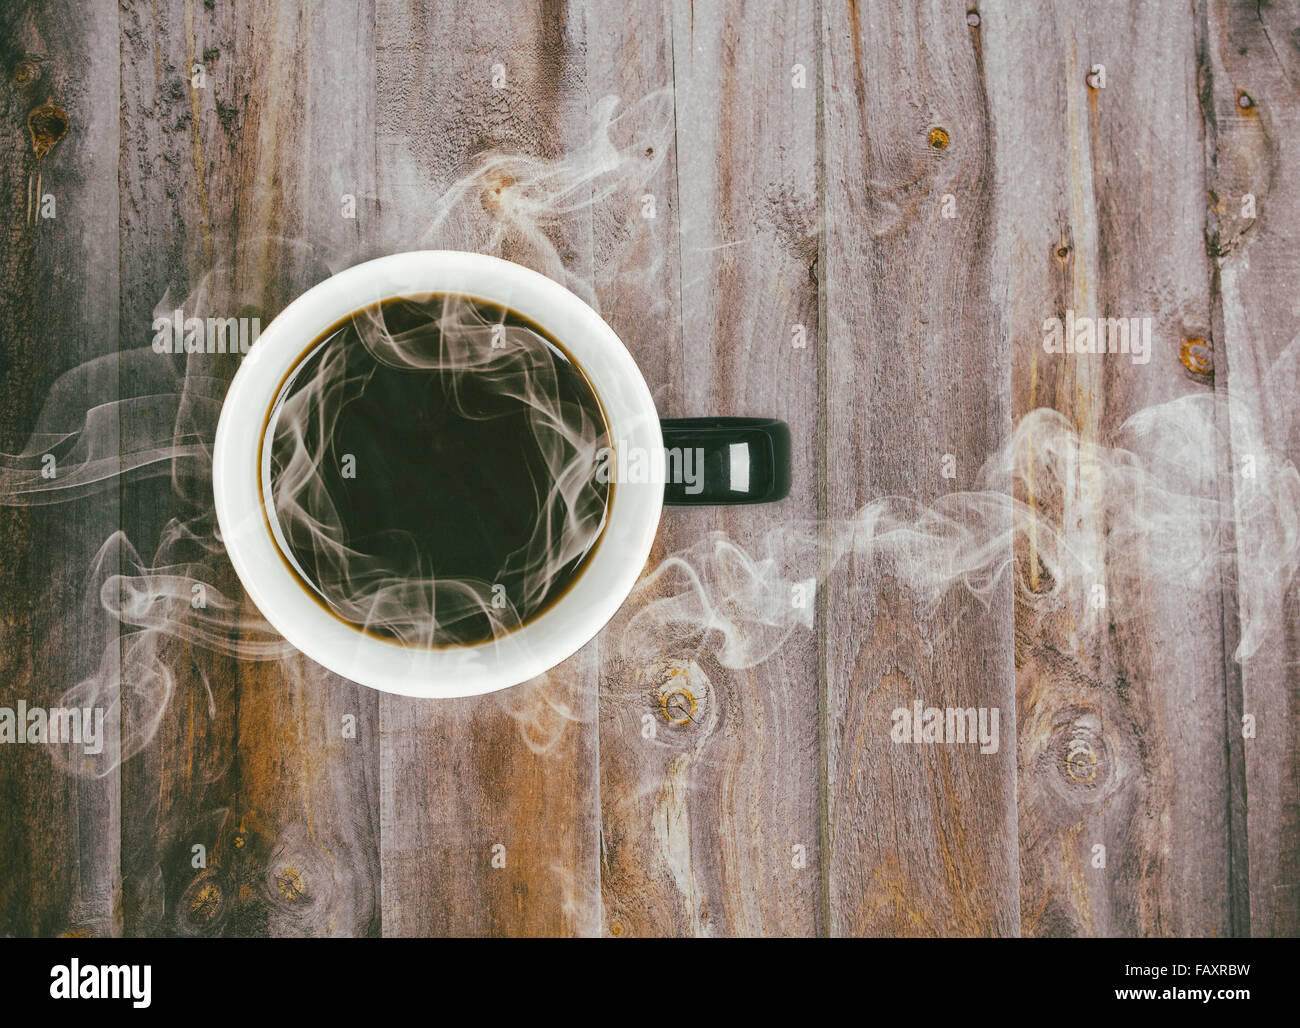 Kaffeetasse auf Holztisch mit dampfenden heißen schwarzen Kaffee - Retro-Instagram  Film Look Filter gesetzt Stockfotografie - Alamy